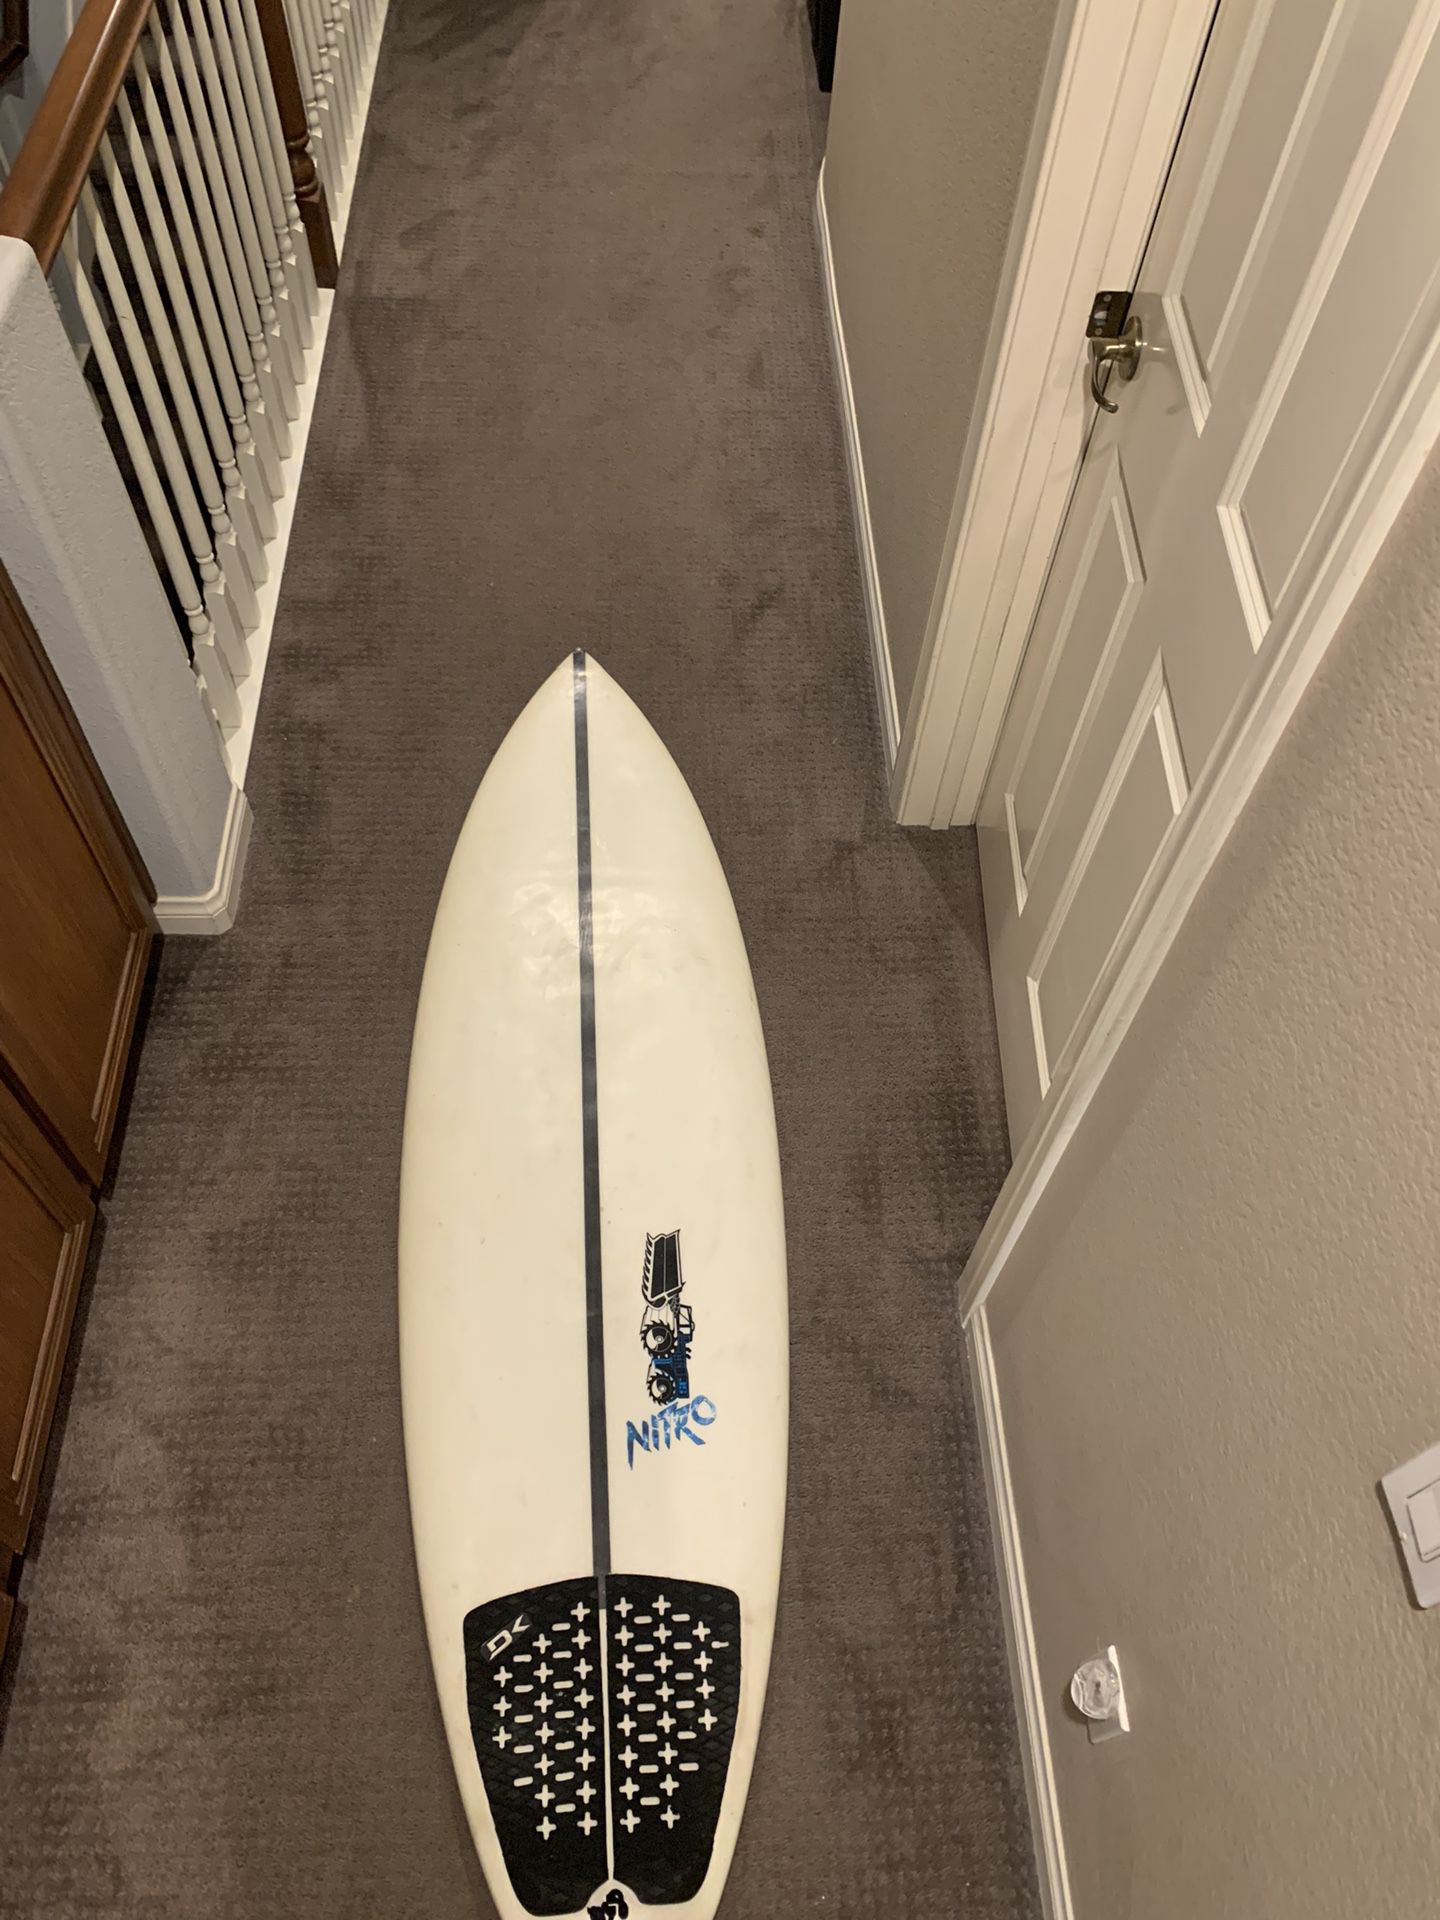 Js Nitro Surfboard 5,11